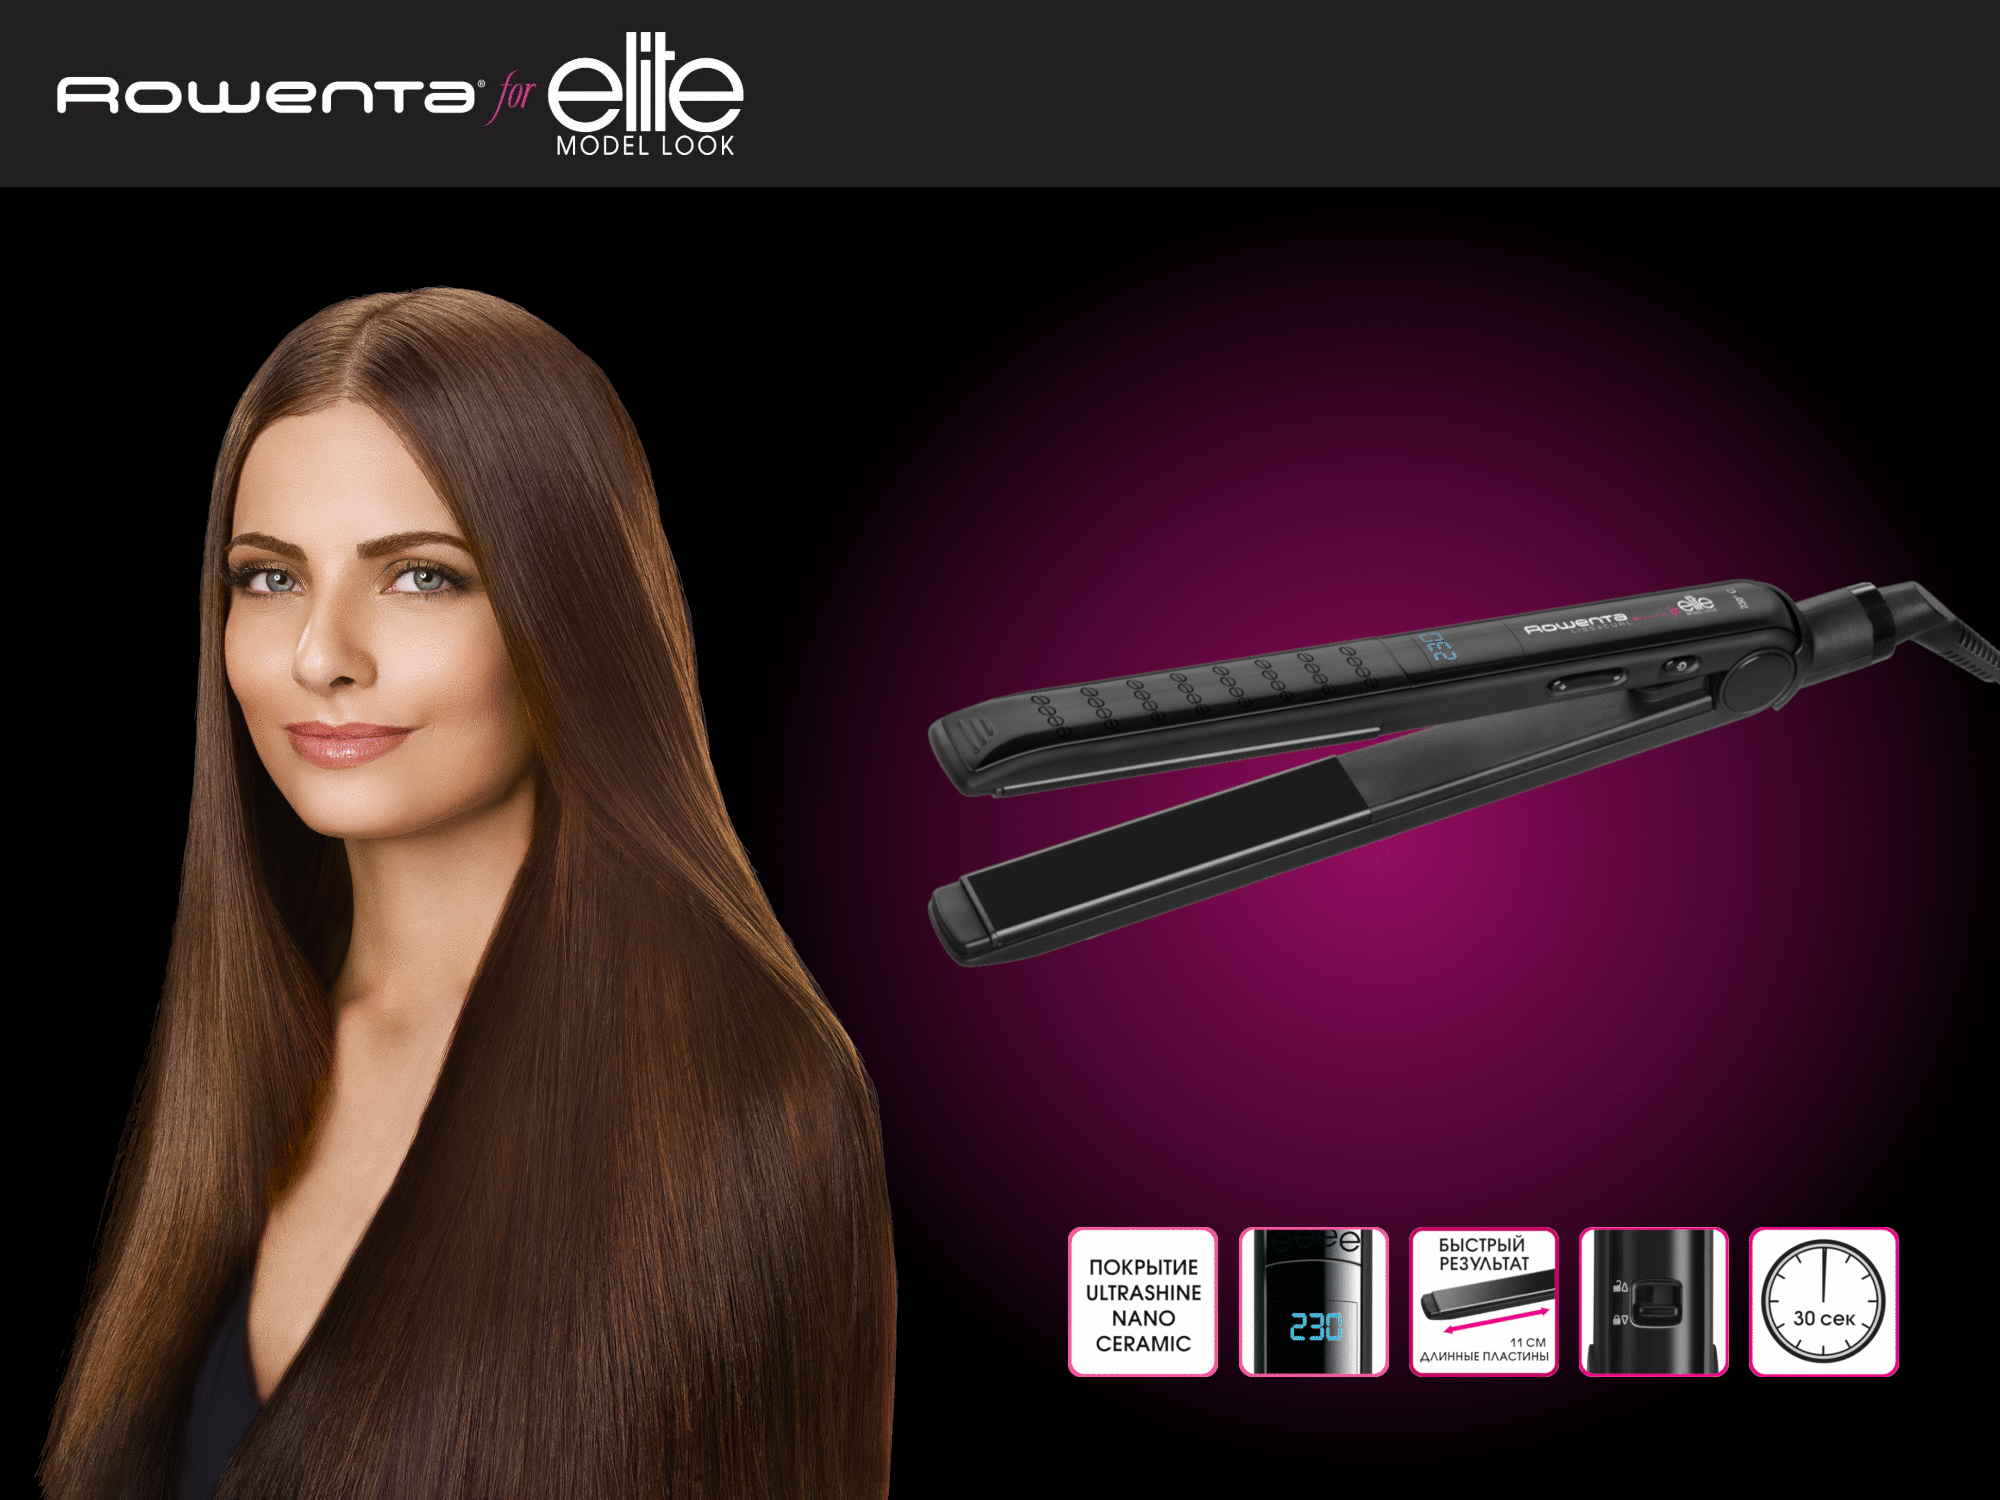 Унікальне покриття пластин Ultra Shine Nano Ceramic забезпечує надійний захист волосся від перегріву, а завдяки широкому температурному діапазону ви зможете підібрати оптимальний режим спеціально для вашого типу волосся